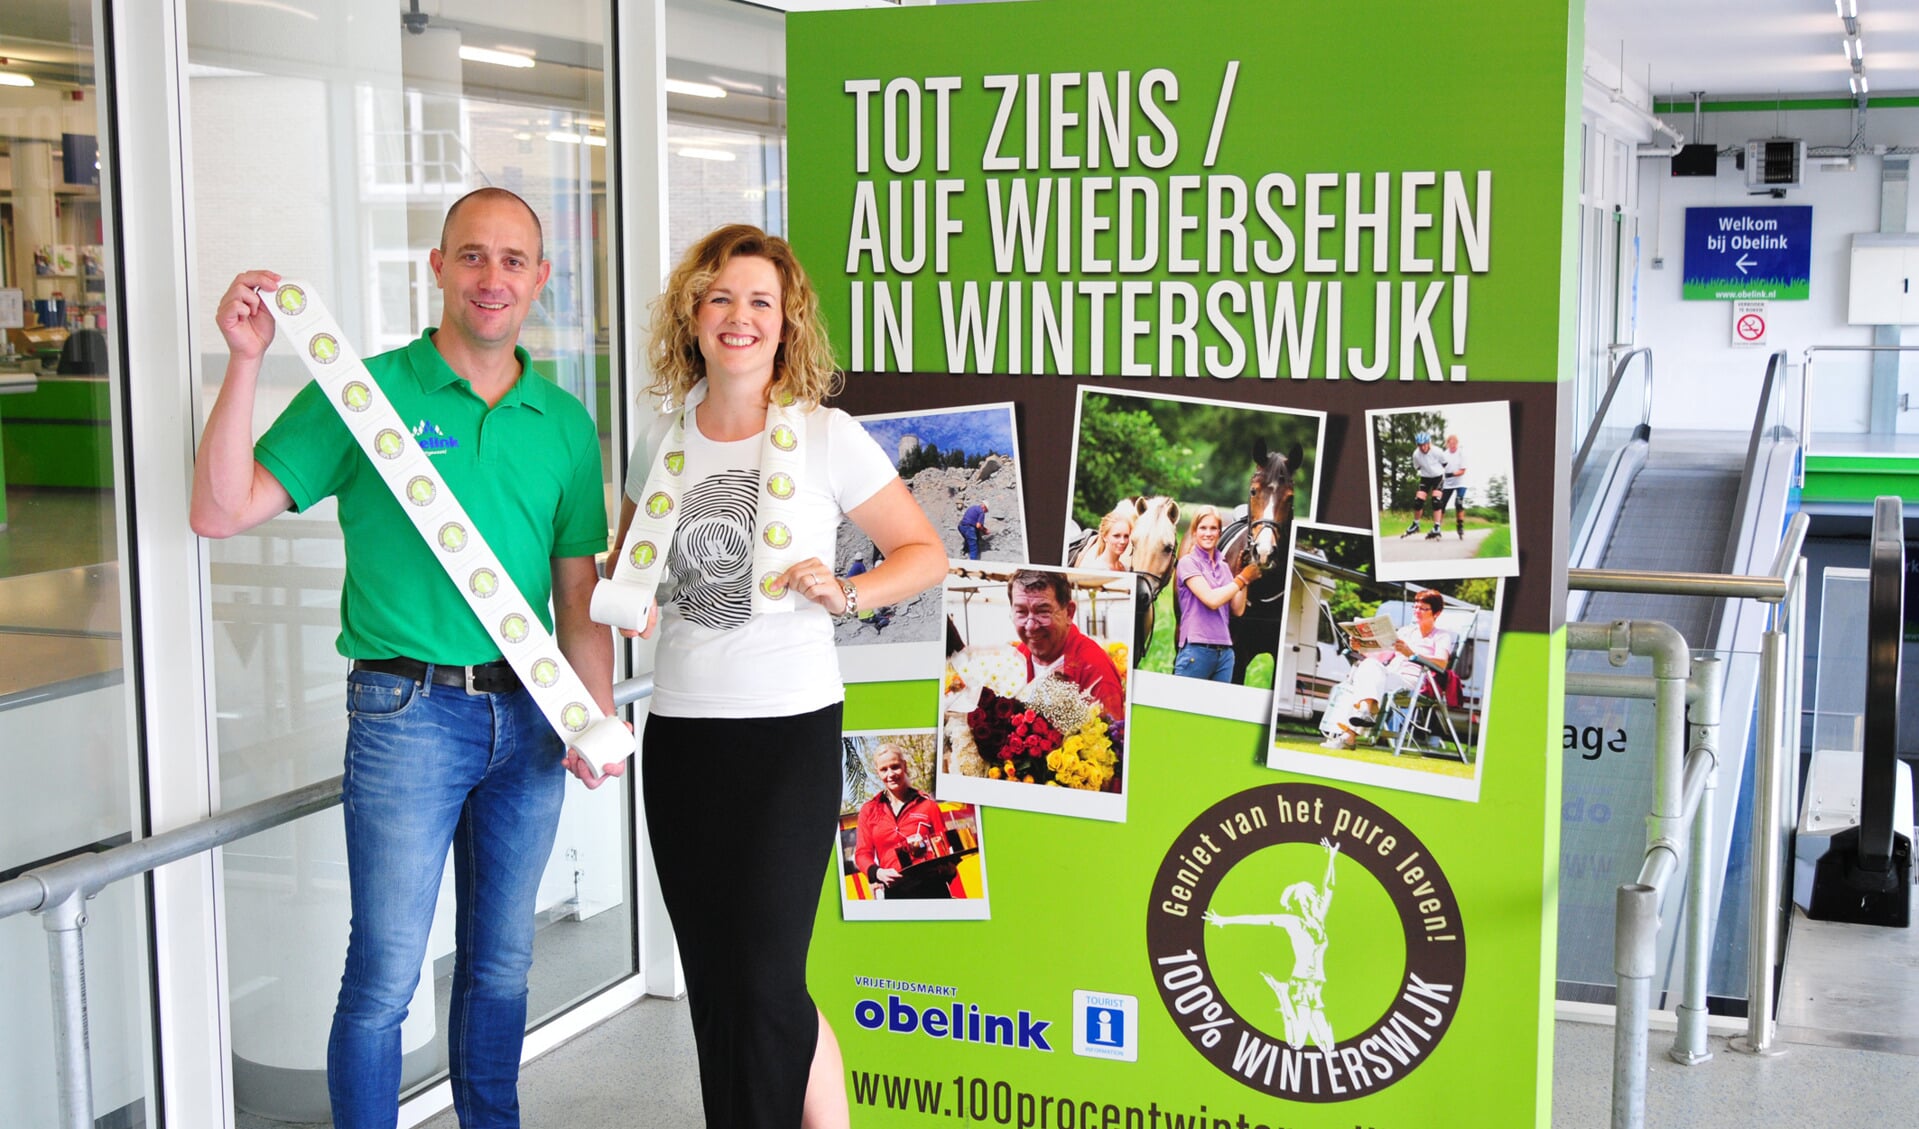 Sven Notten en Imke te Selle presenteren de kassarollen met 100% Winterswijk opdruk. Foto: PR